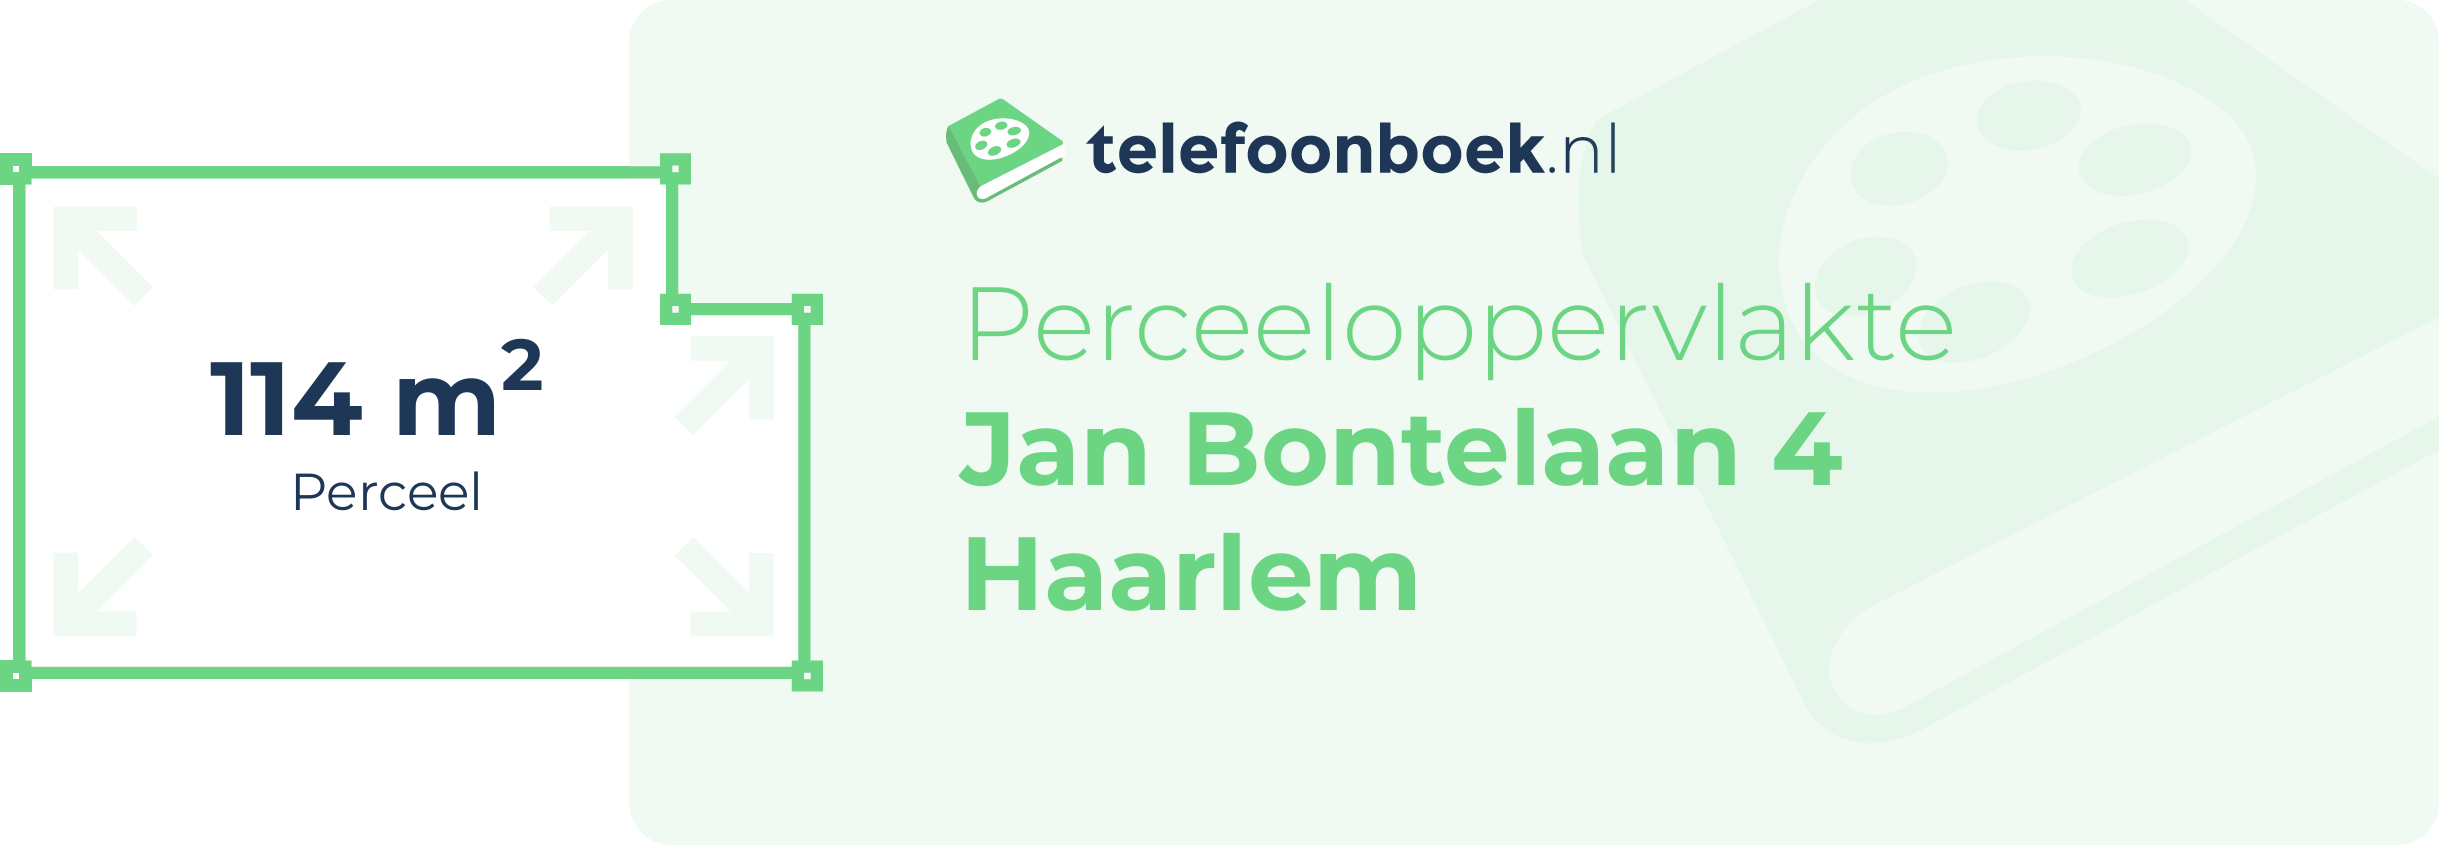 Perceeloppervlakte Jan Bontelaan 4 Haarlem